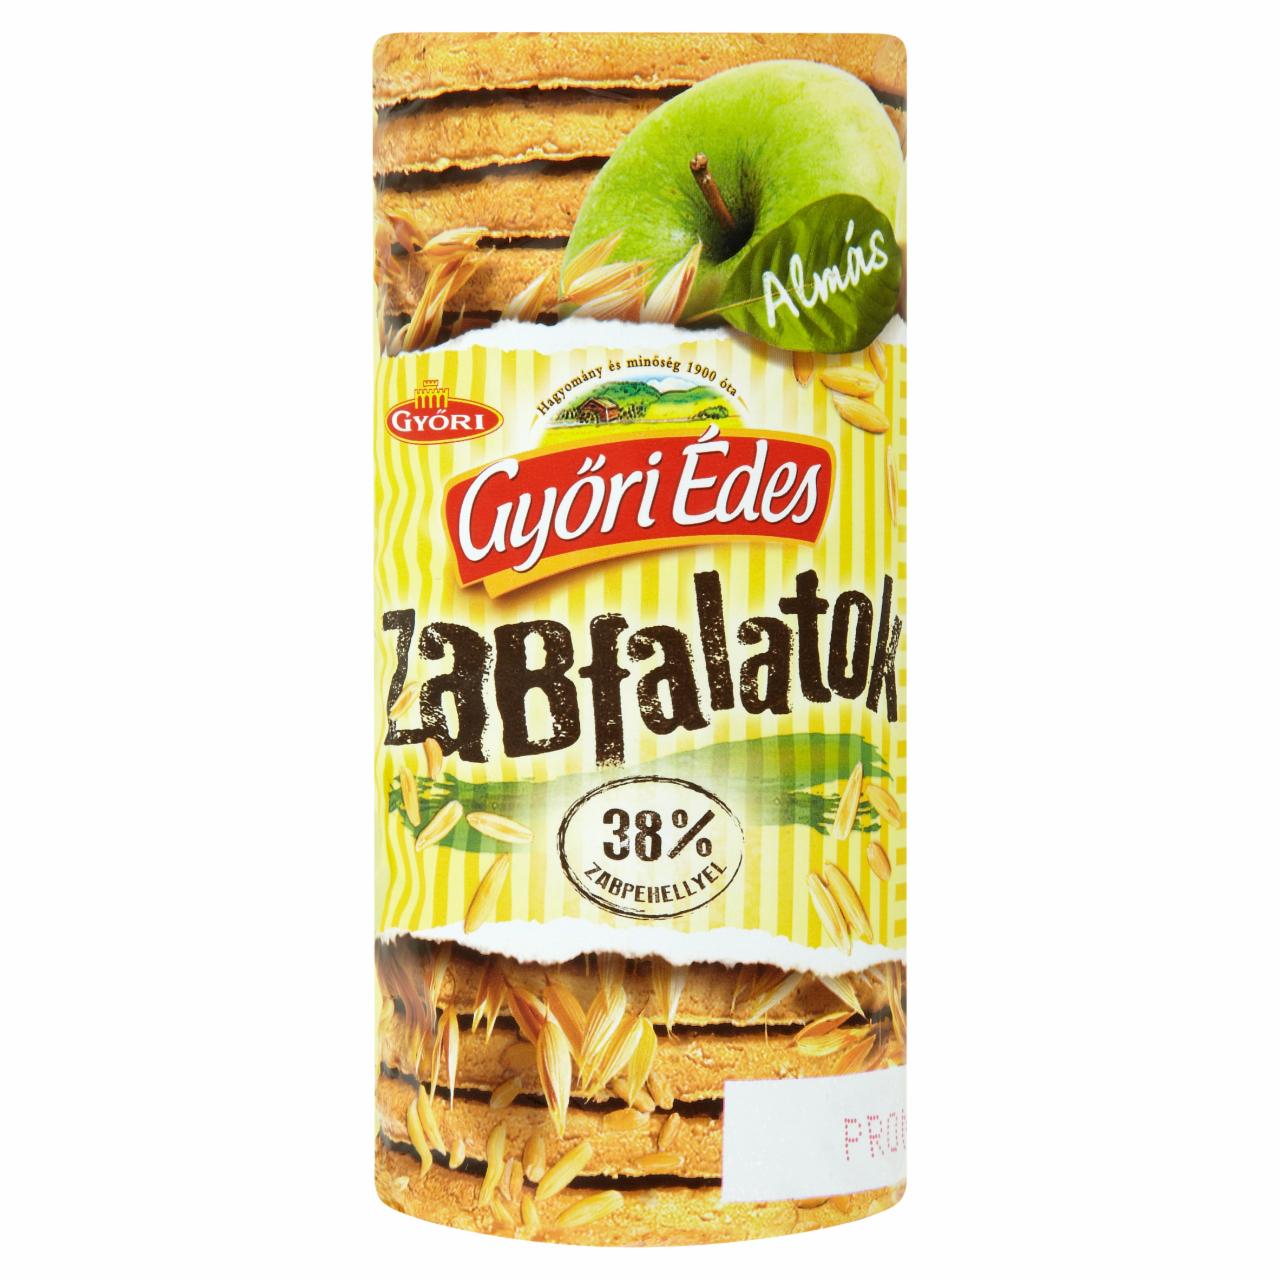 Képek - Győri Édes Zabfalatok almás, zabpelyhes, omlós keksz 225 g